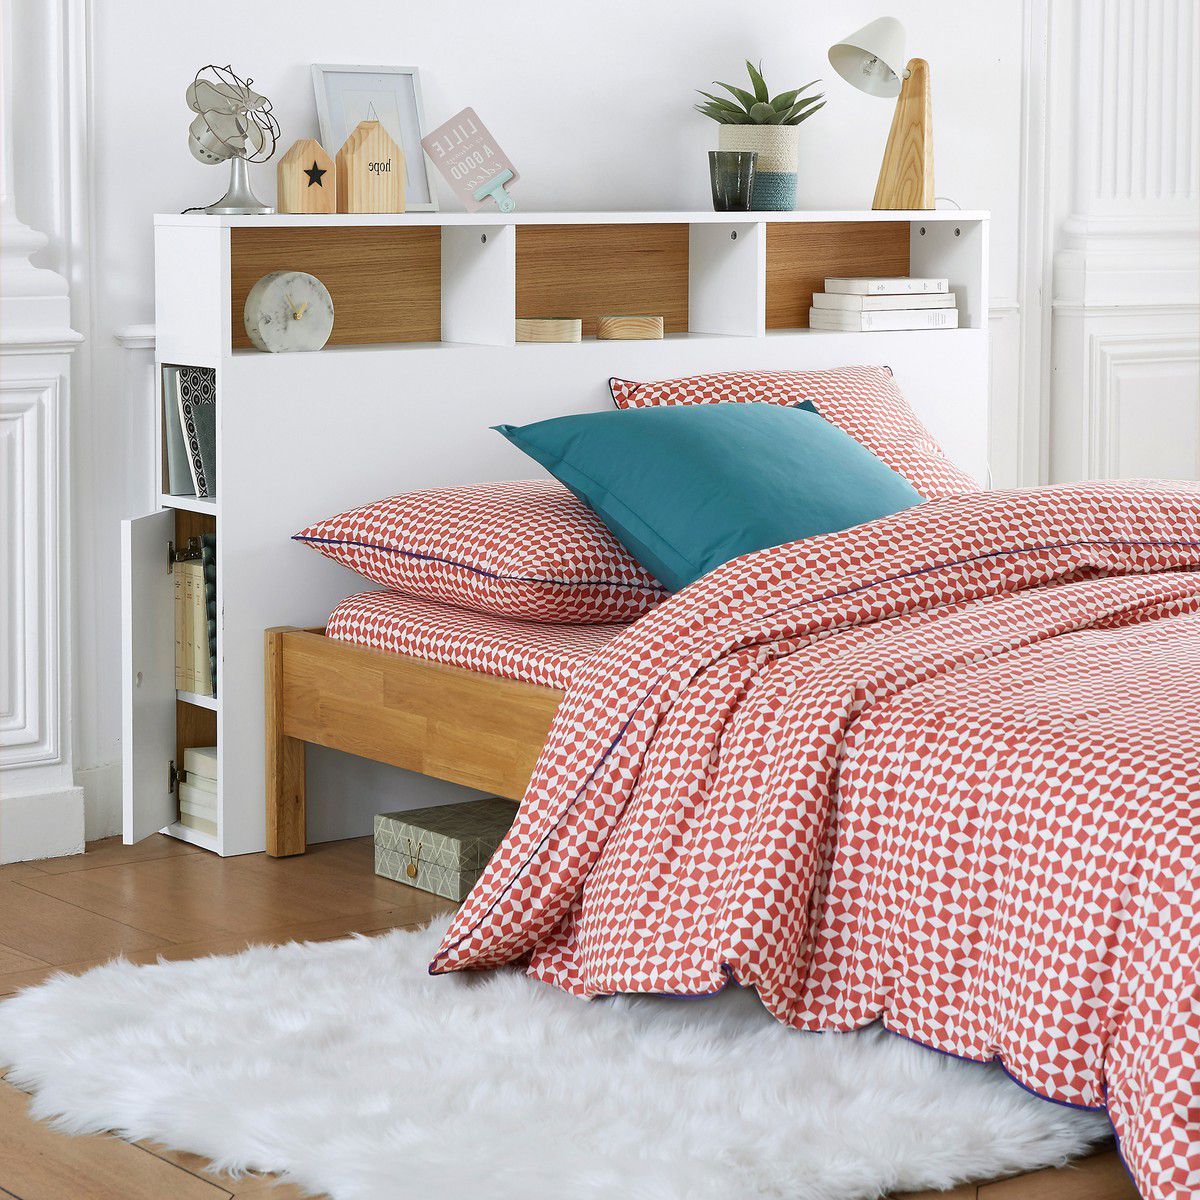 15 cabeceros originales para tu dormitorio | Tête de lit ...